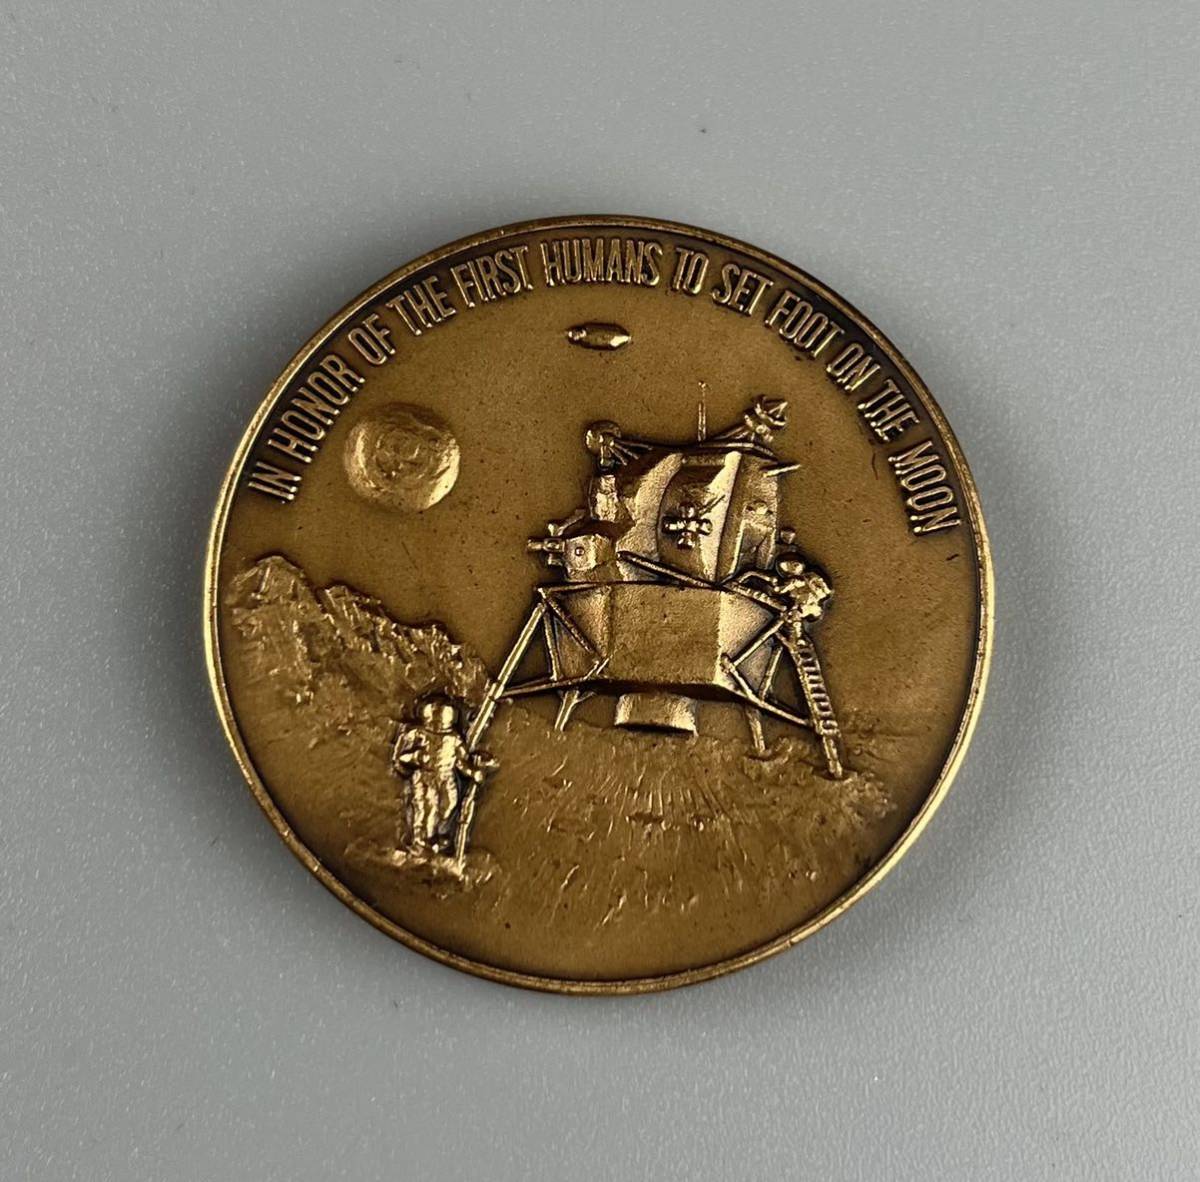 アポロ11号月面着陸記念切手・JFケネディ記念コイン 直売本物